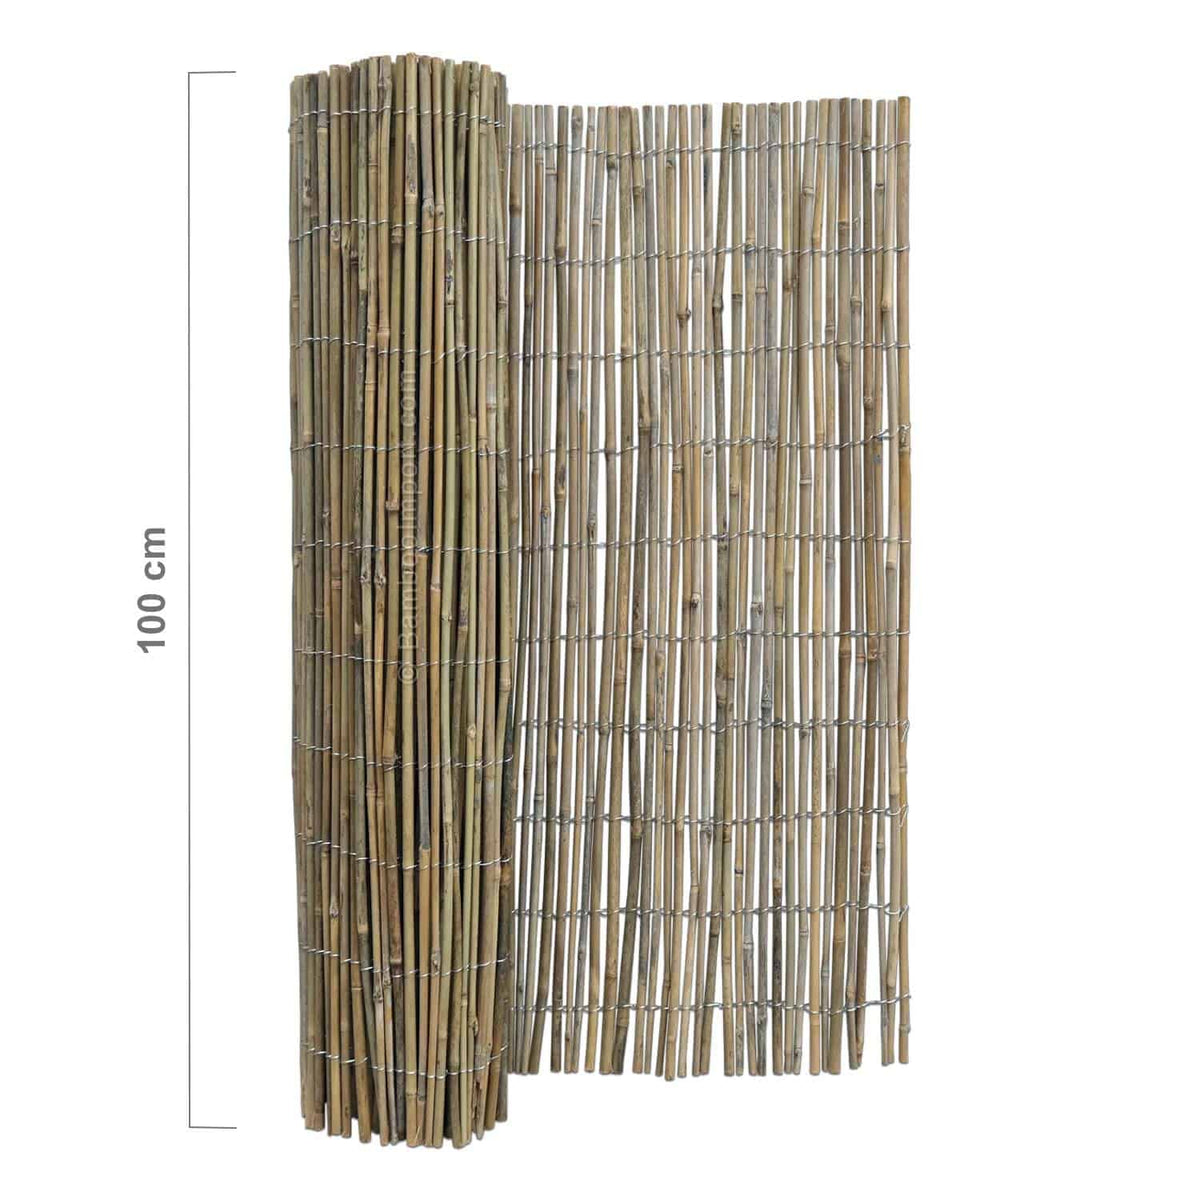 Bamboe Mat Tonkin